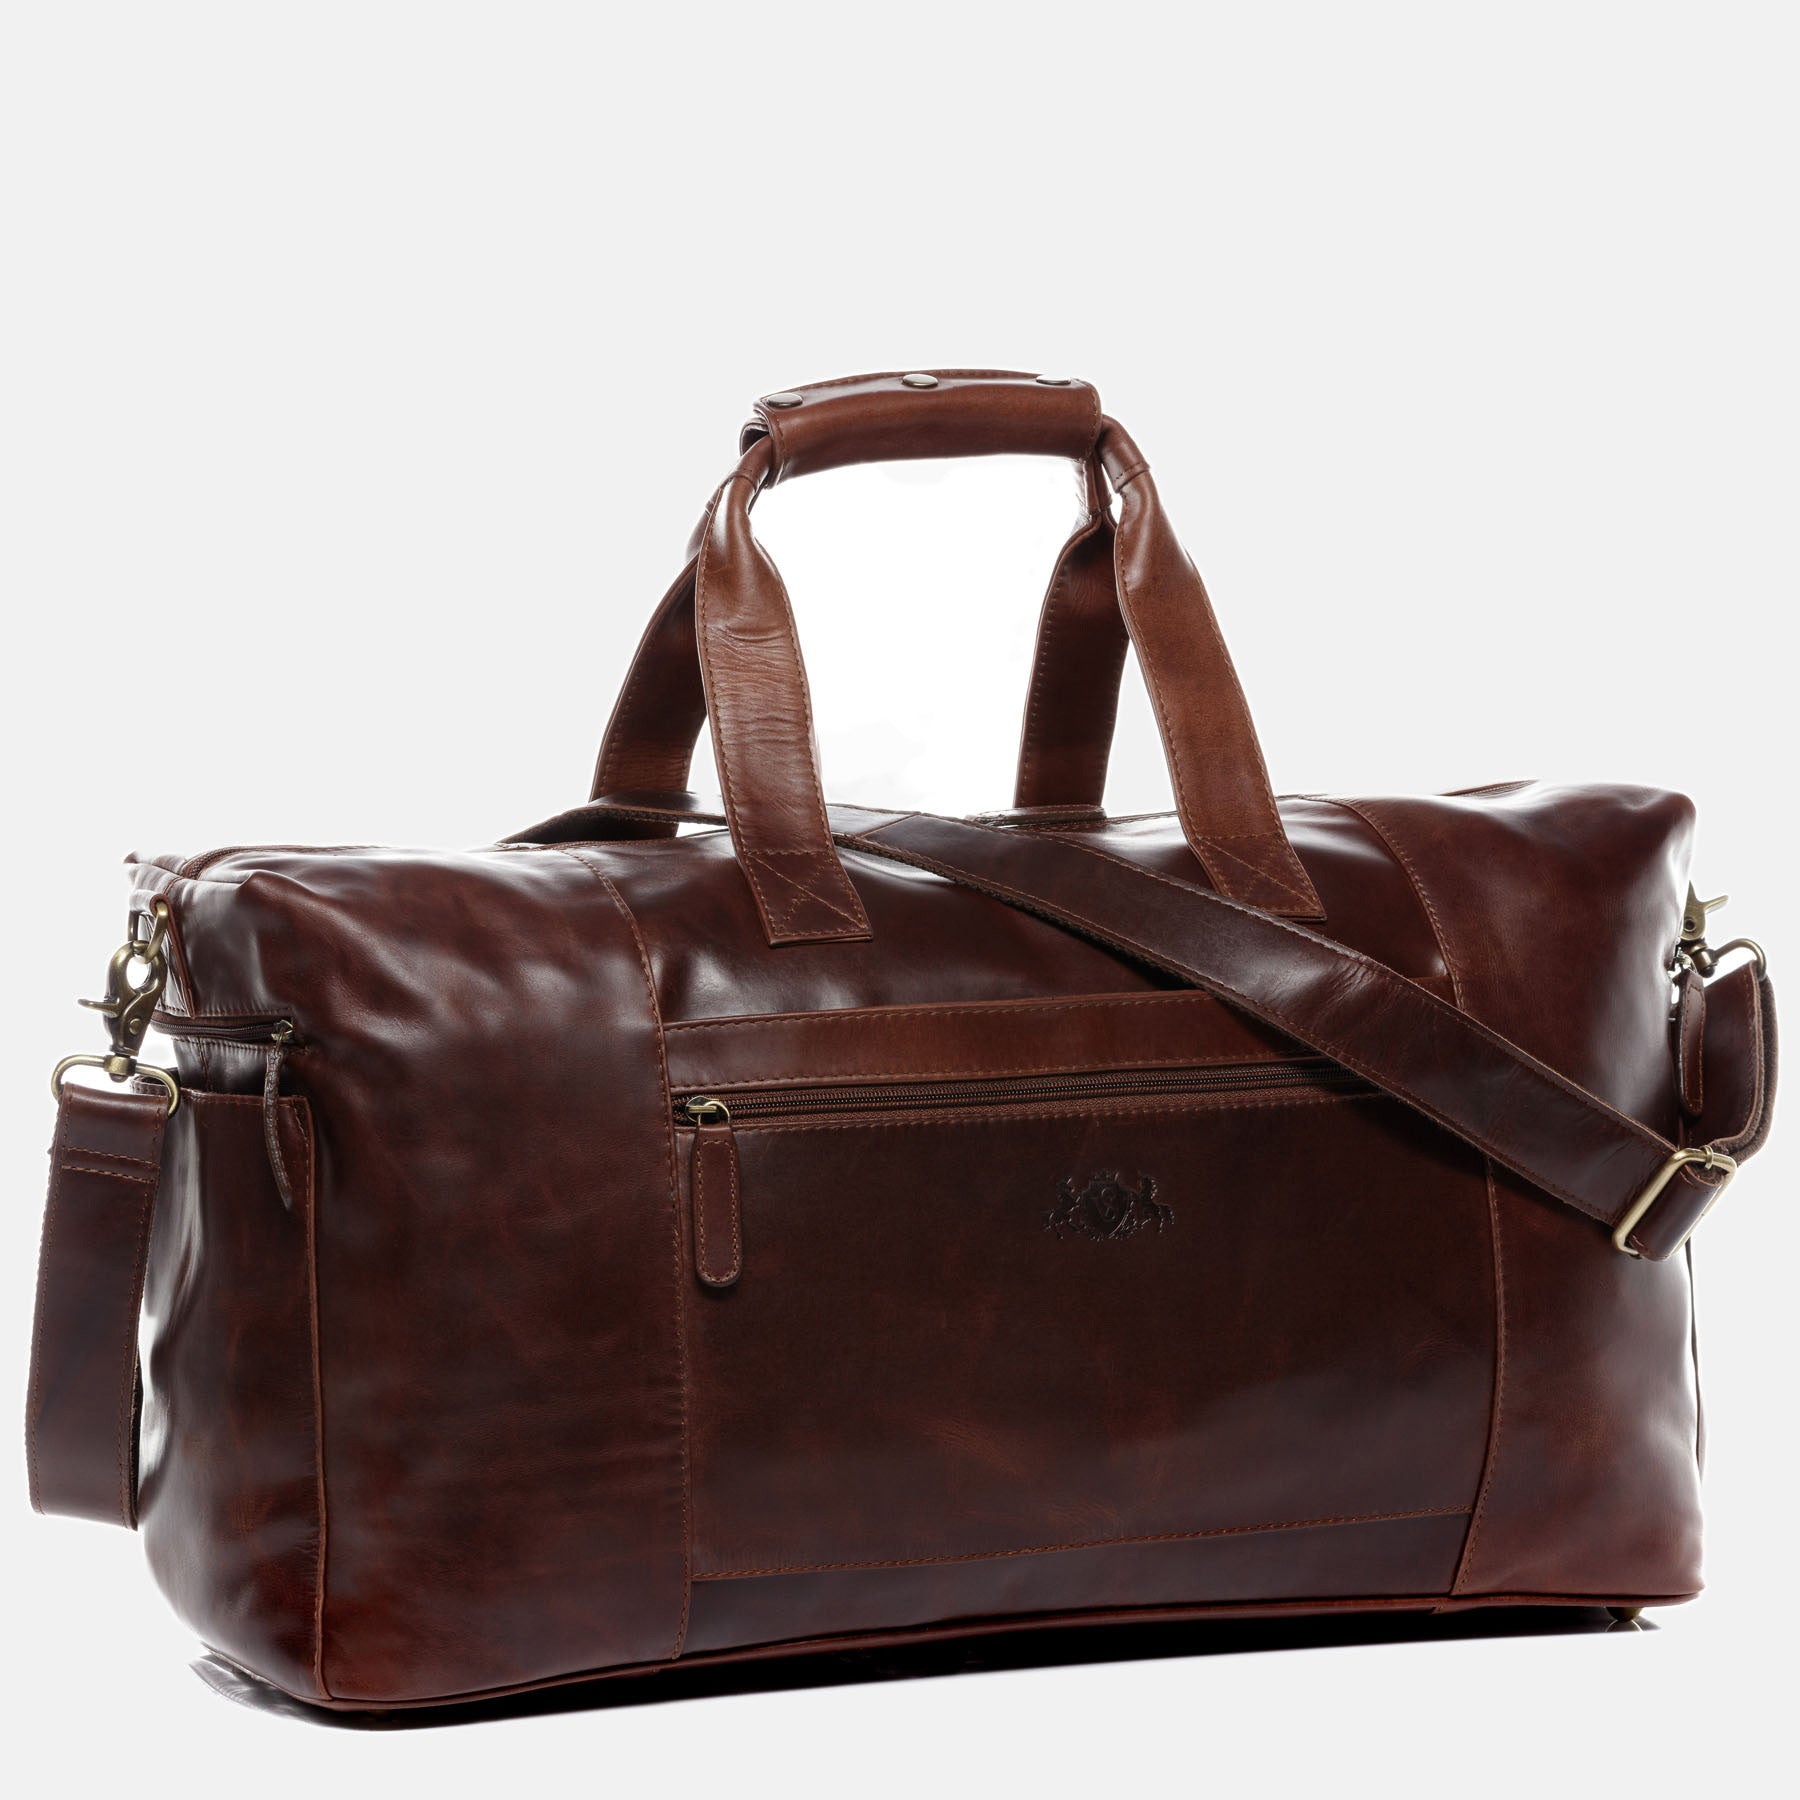 Travel bag BRISTOL SIDE natural leather brown